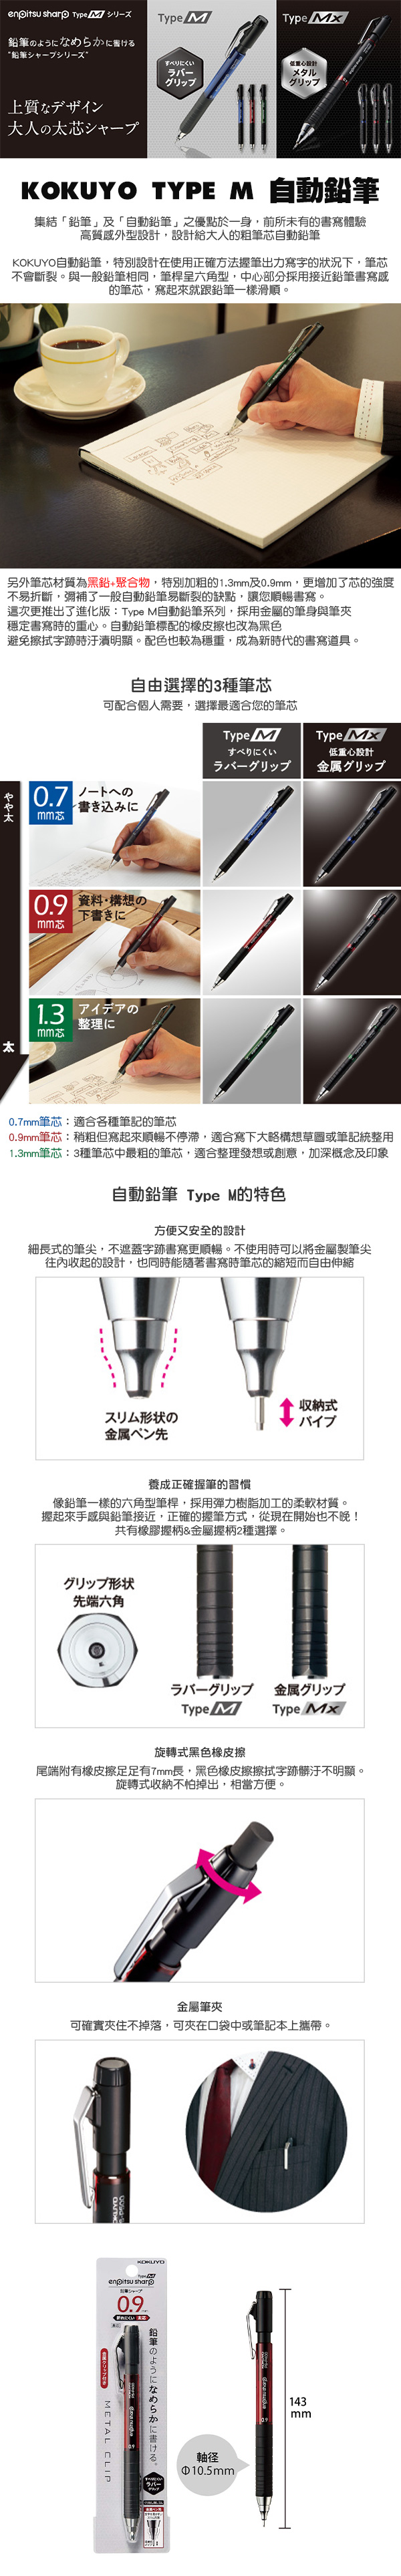 自動鉛筆 橡皮擦 日本製 橡皮擦 橡皮擦 橡膠